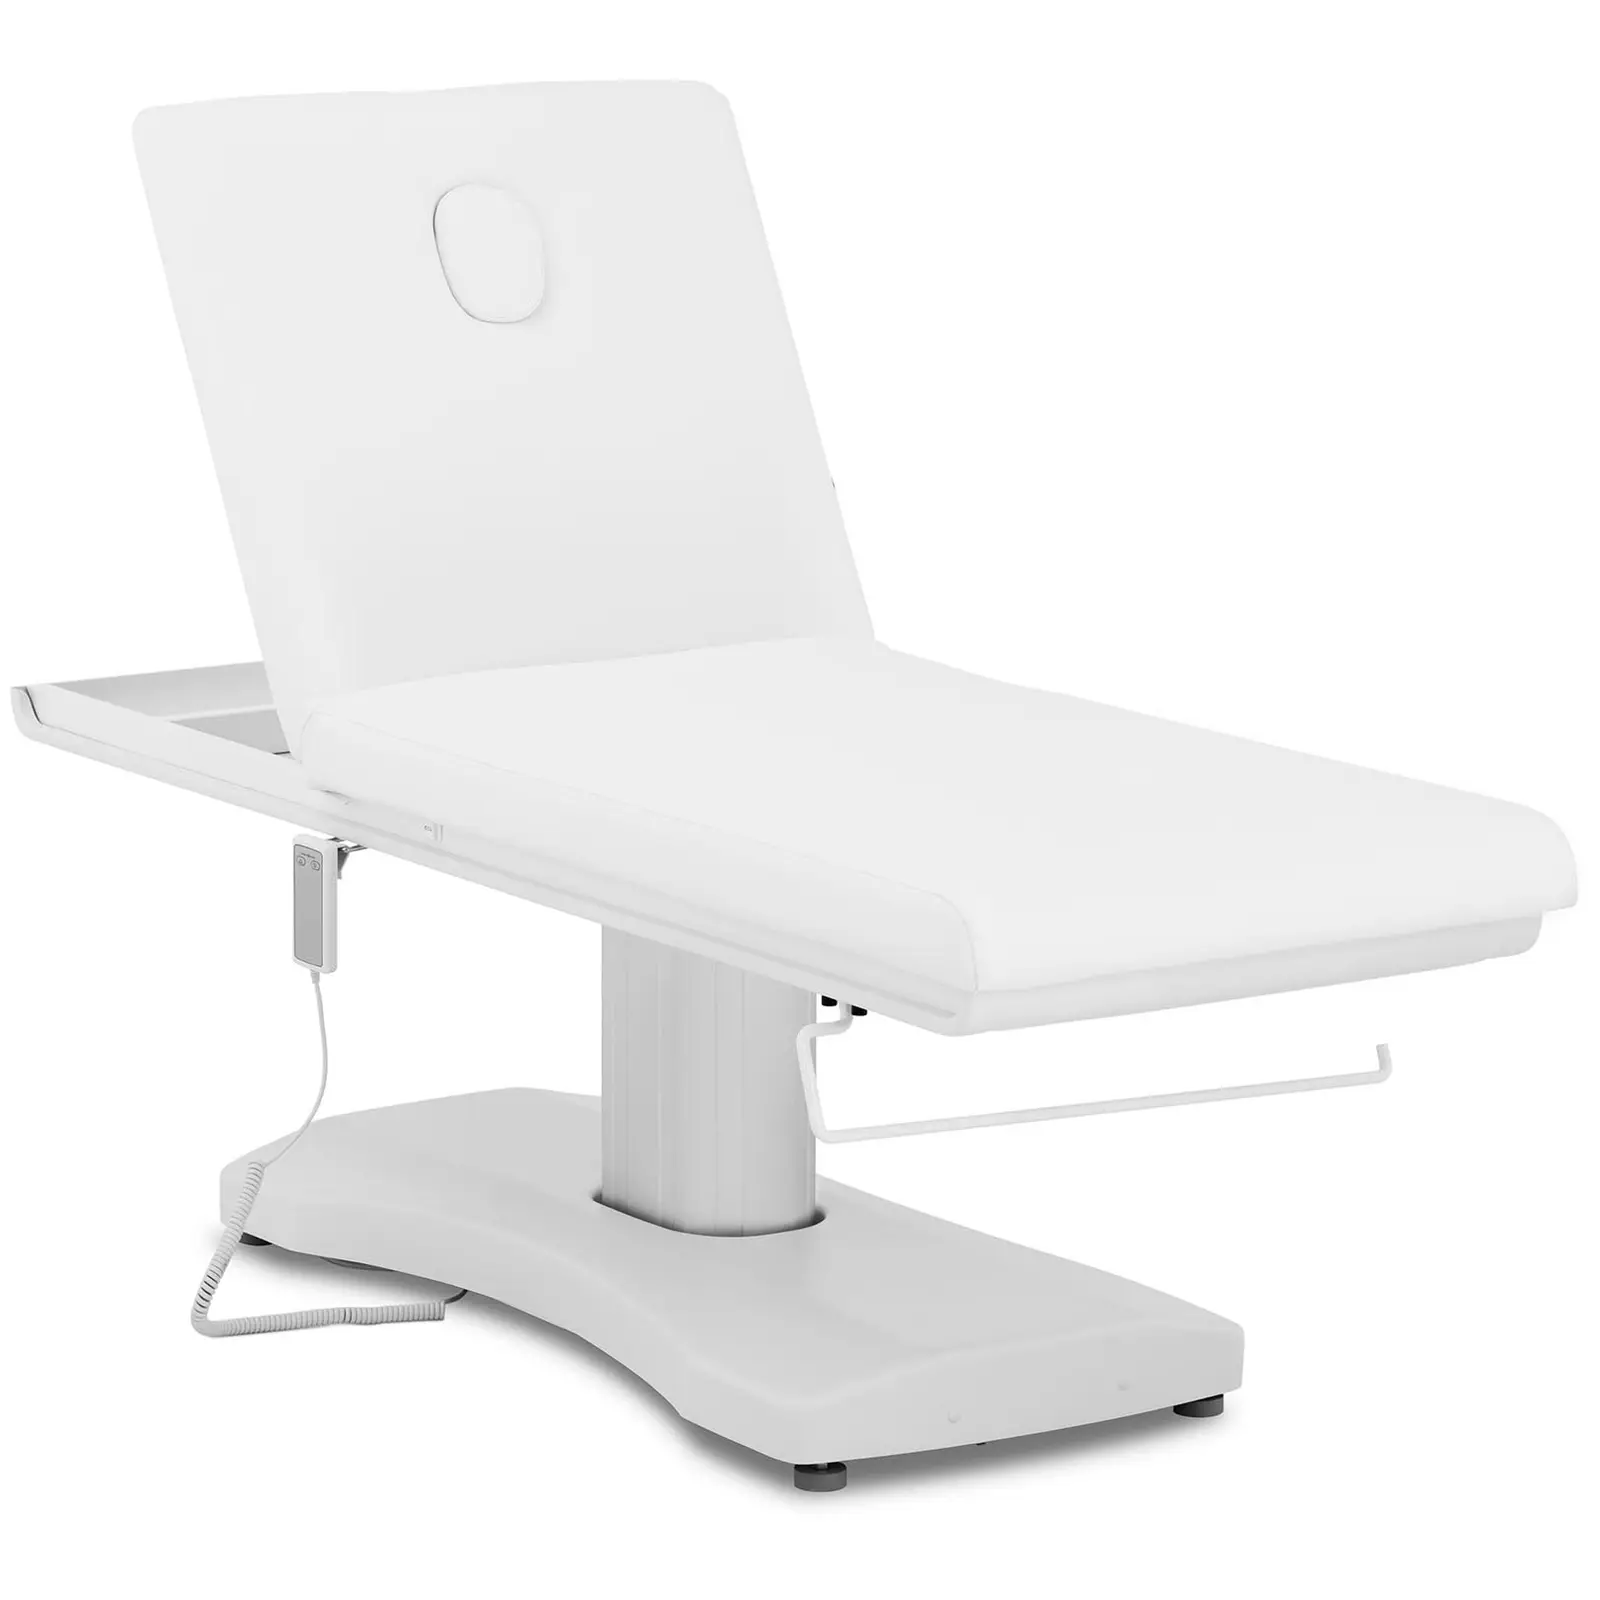 Lettino massaggio e fisioterapia elettrico - 196 x 69 x 90 cm - 175 kg - Bianco